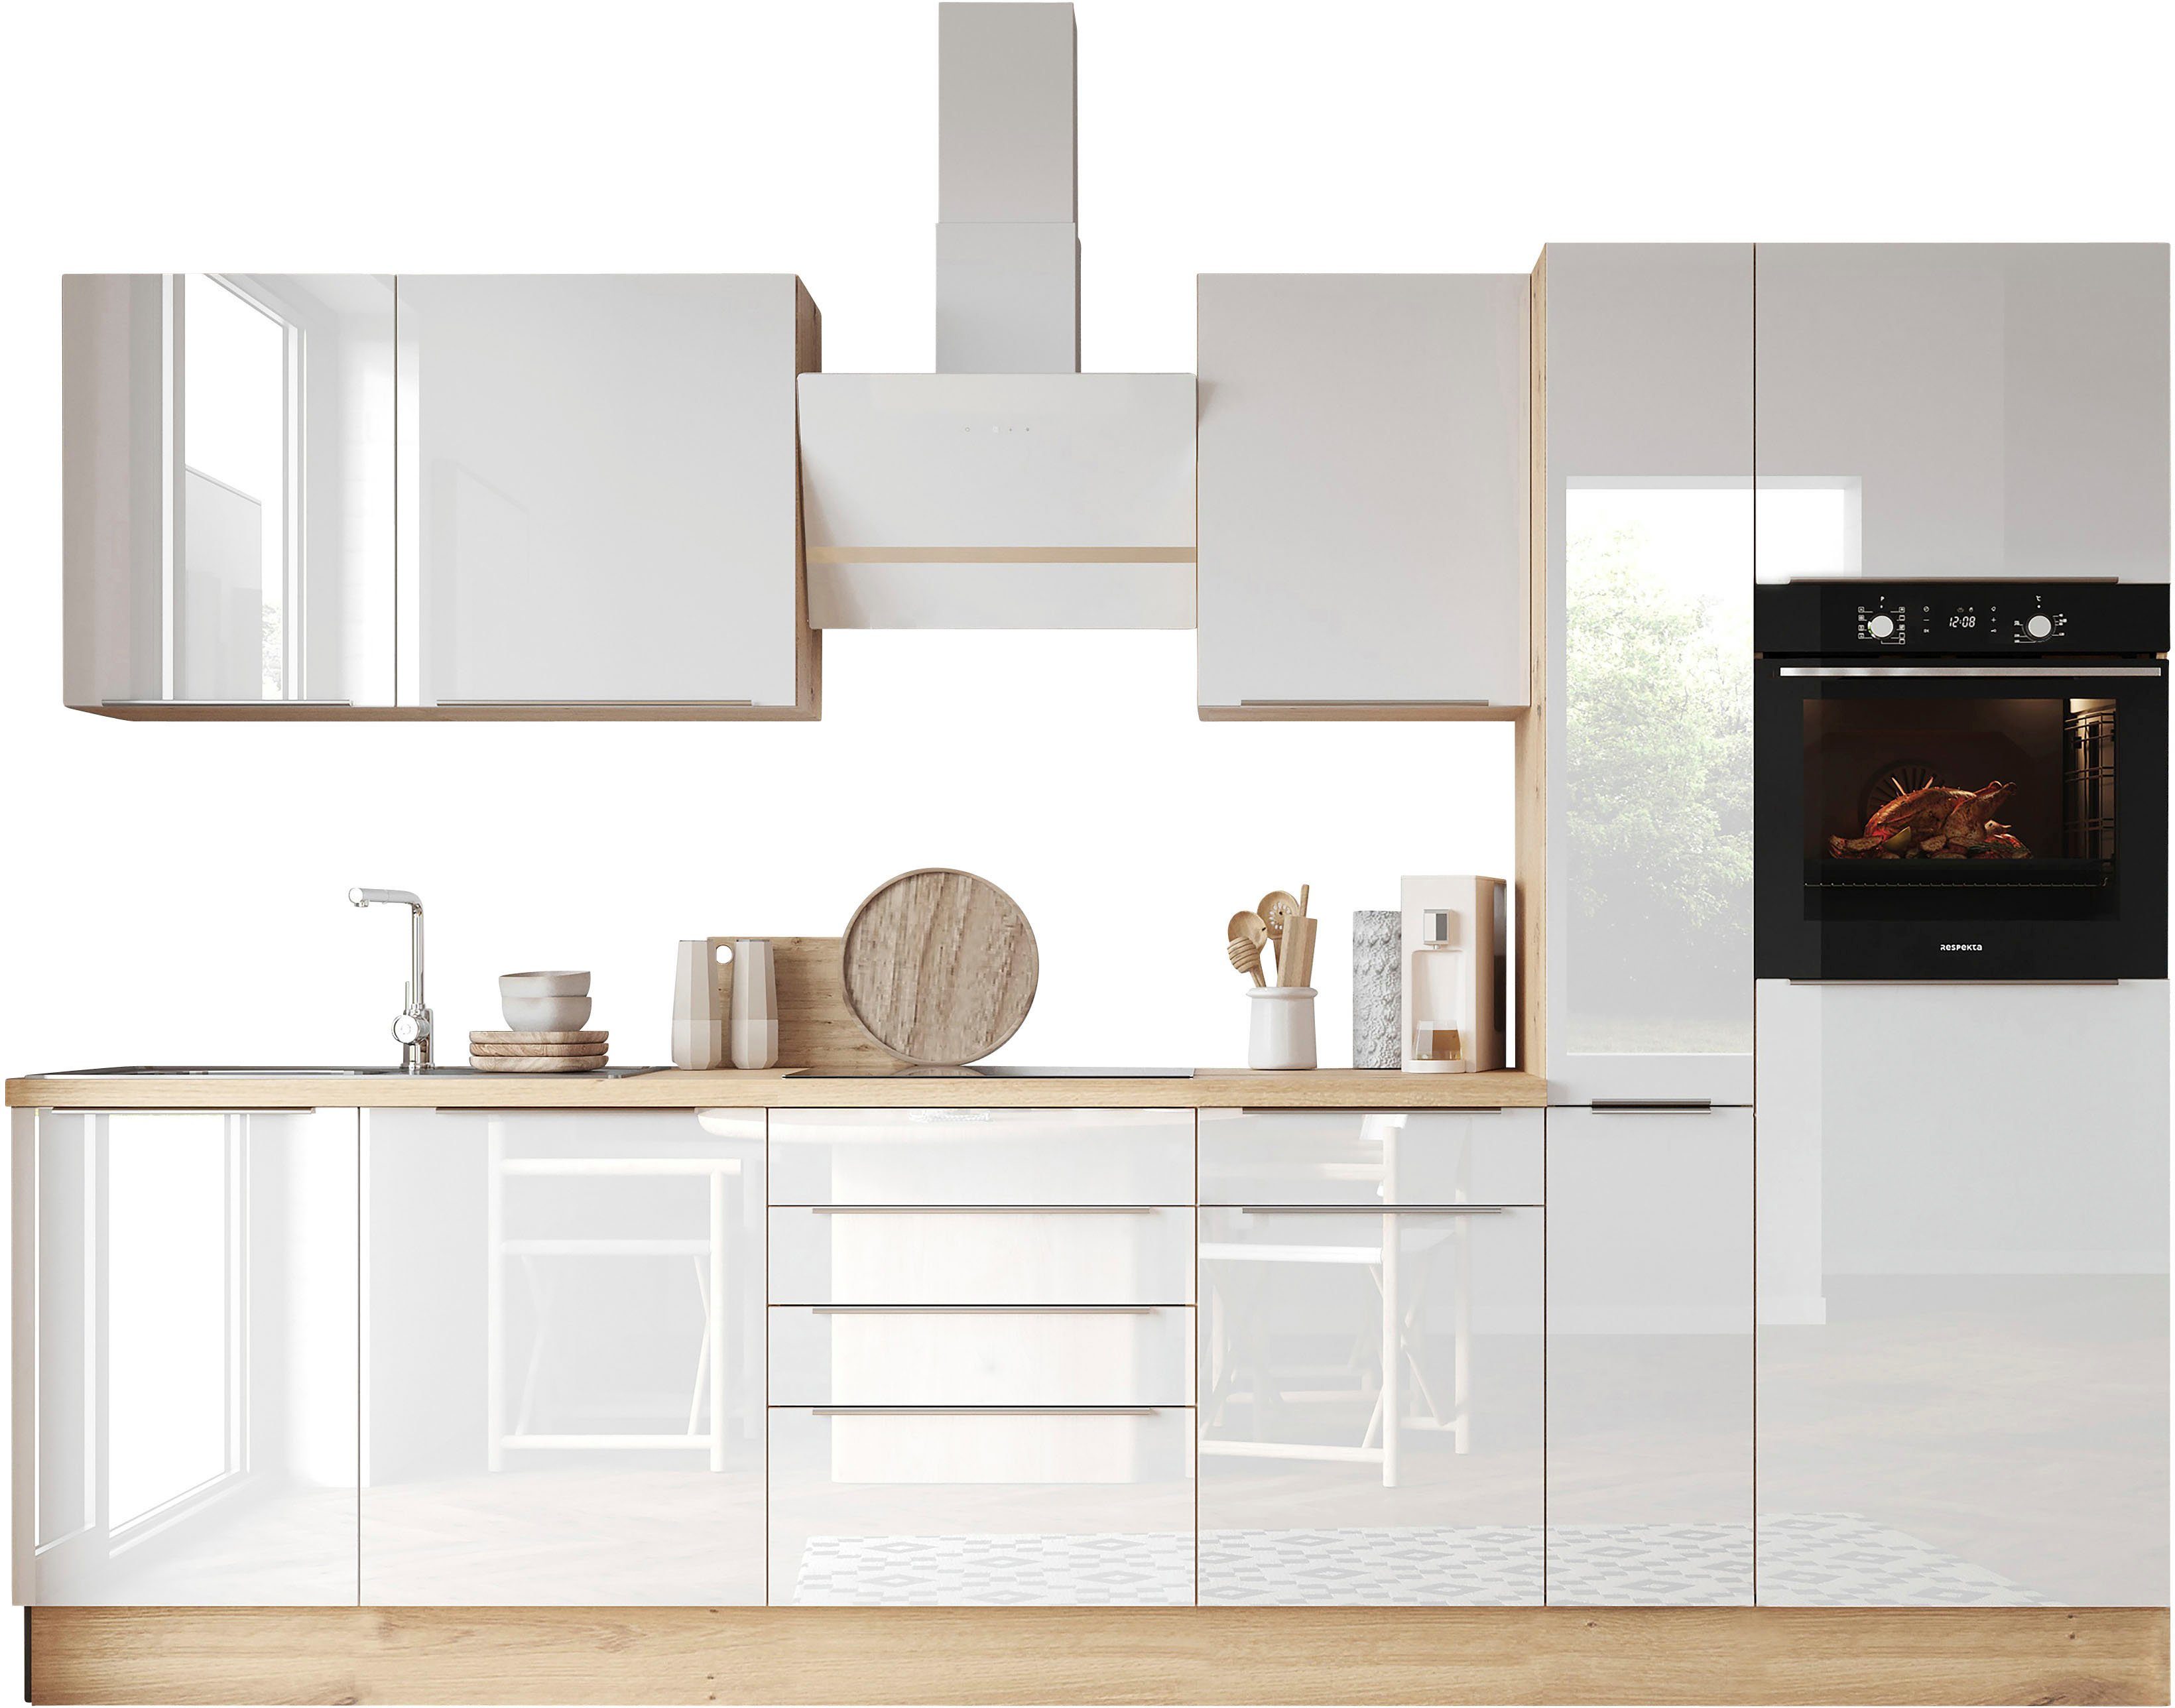 RESPEKTA Küchenzeile Safado aus der Serie Marleen, Breite 310 cm, mit Soft- Close, in exklusiver Konfiguration für OTTO, Wandabschlussleiste